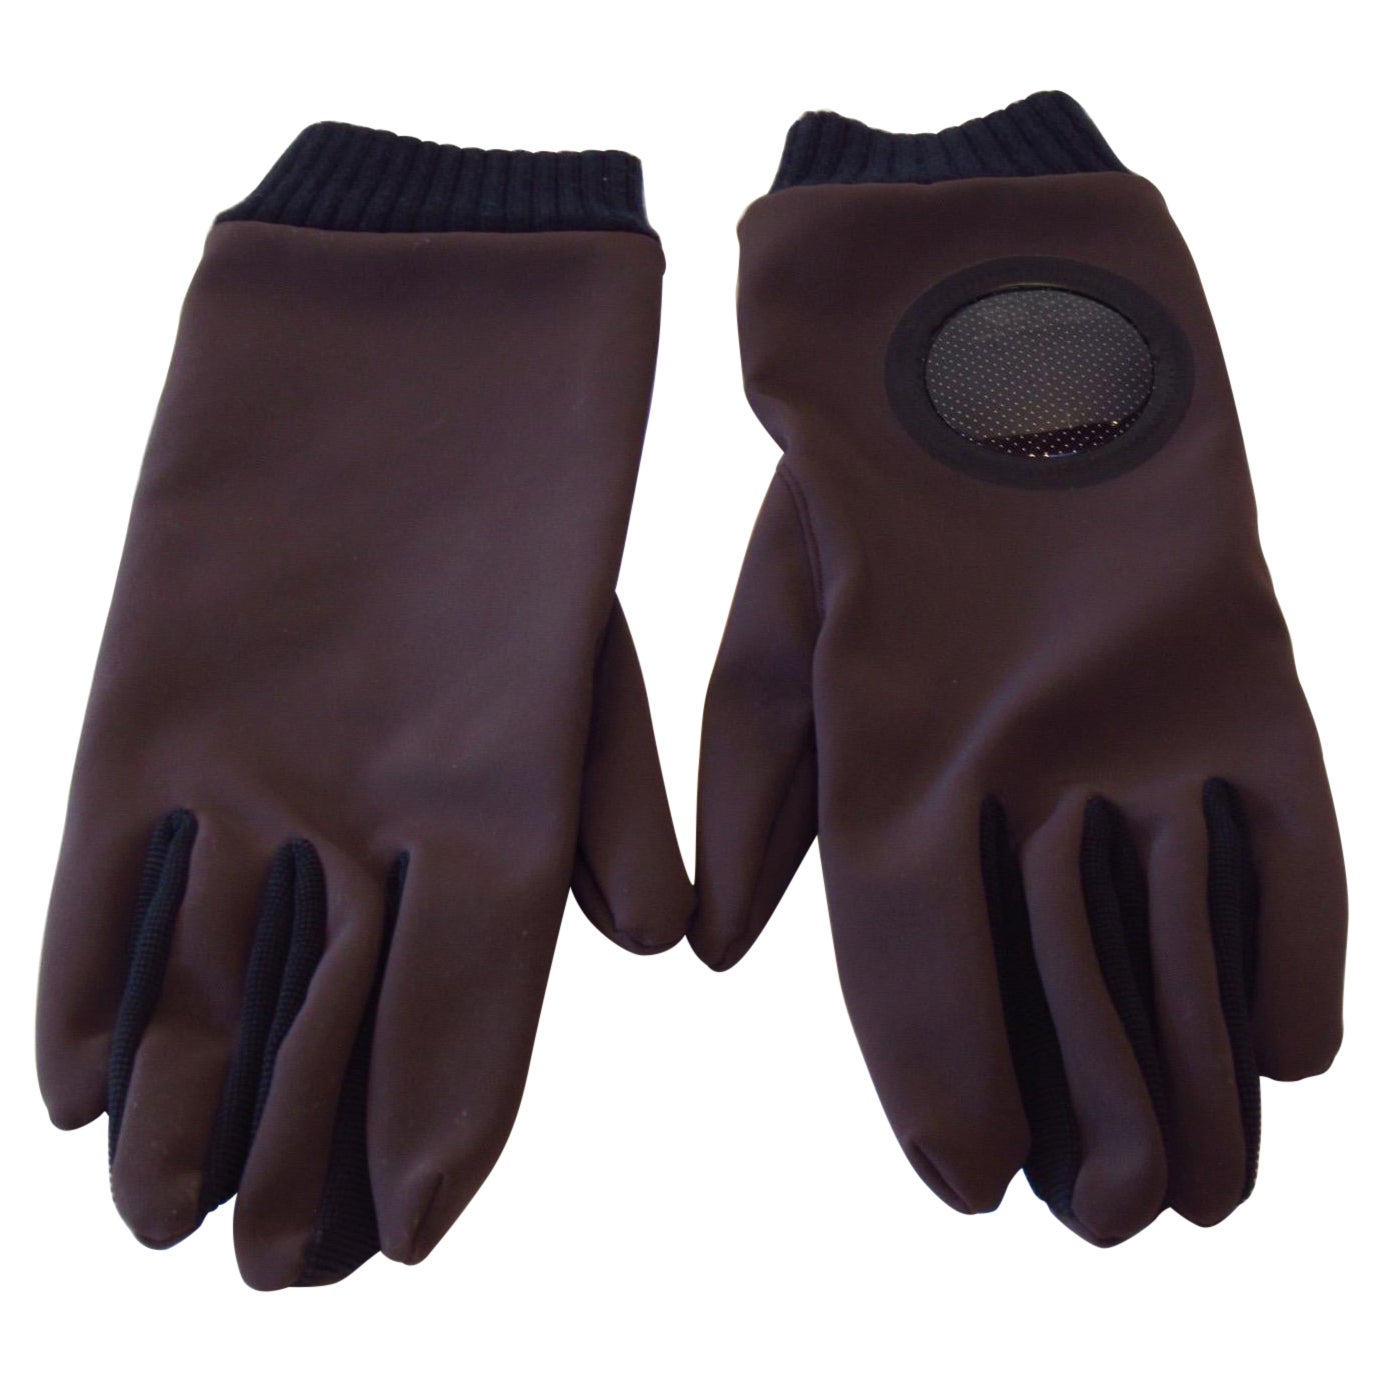 Undercover Nylon Gloves   For Sale